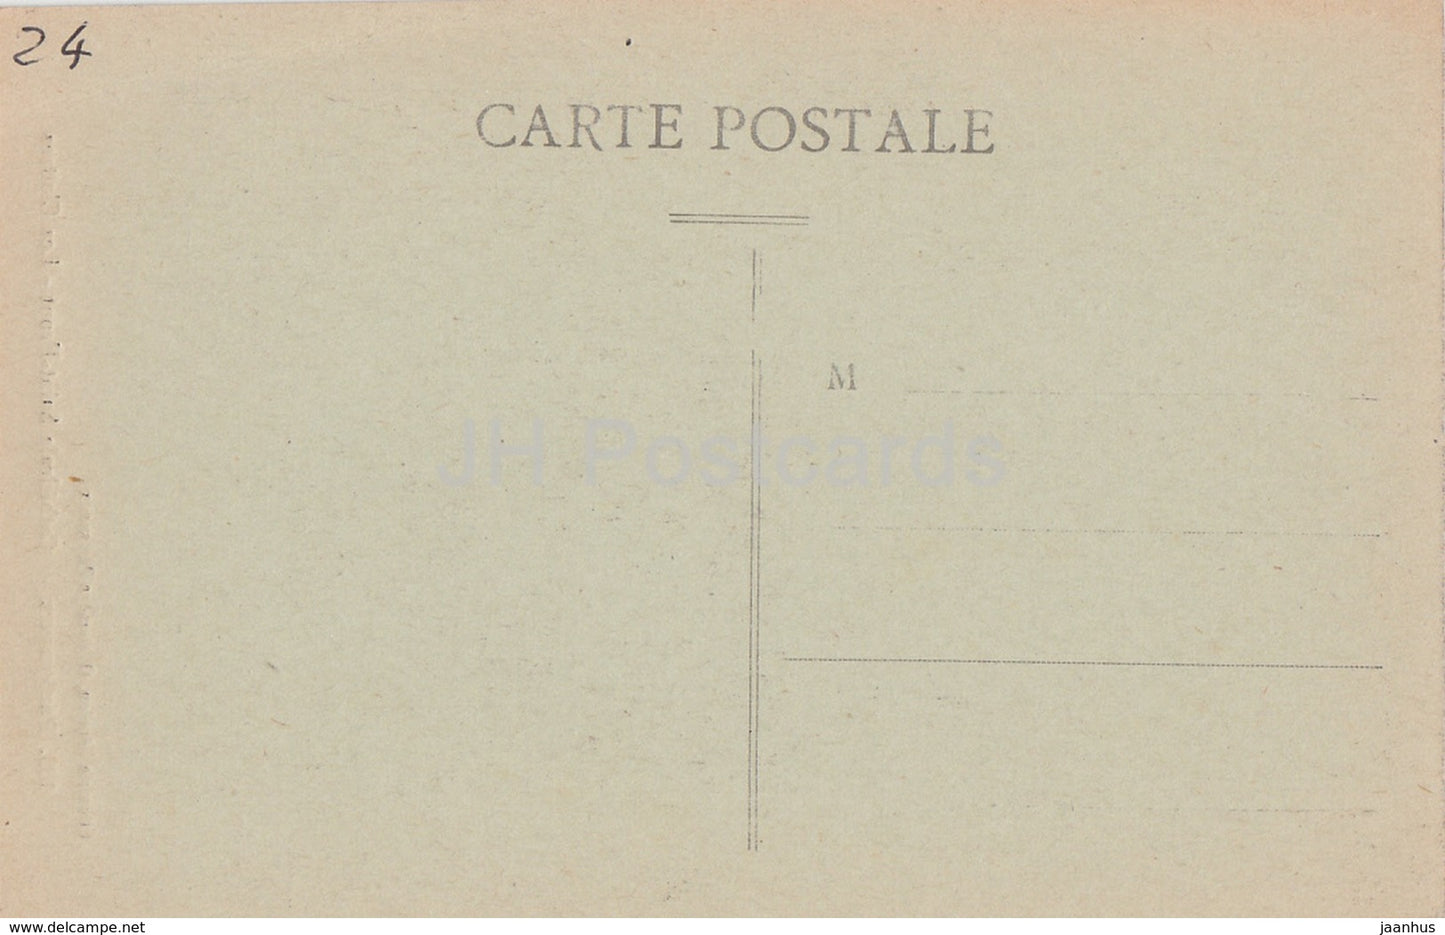 Périgueux - Cathédrale St Front - Les Cloîtres - cathédrale - 139 - carte postale ancienne - France - inutilisée